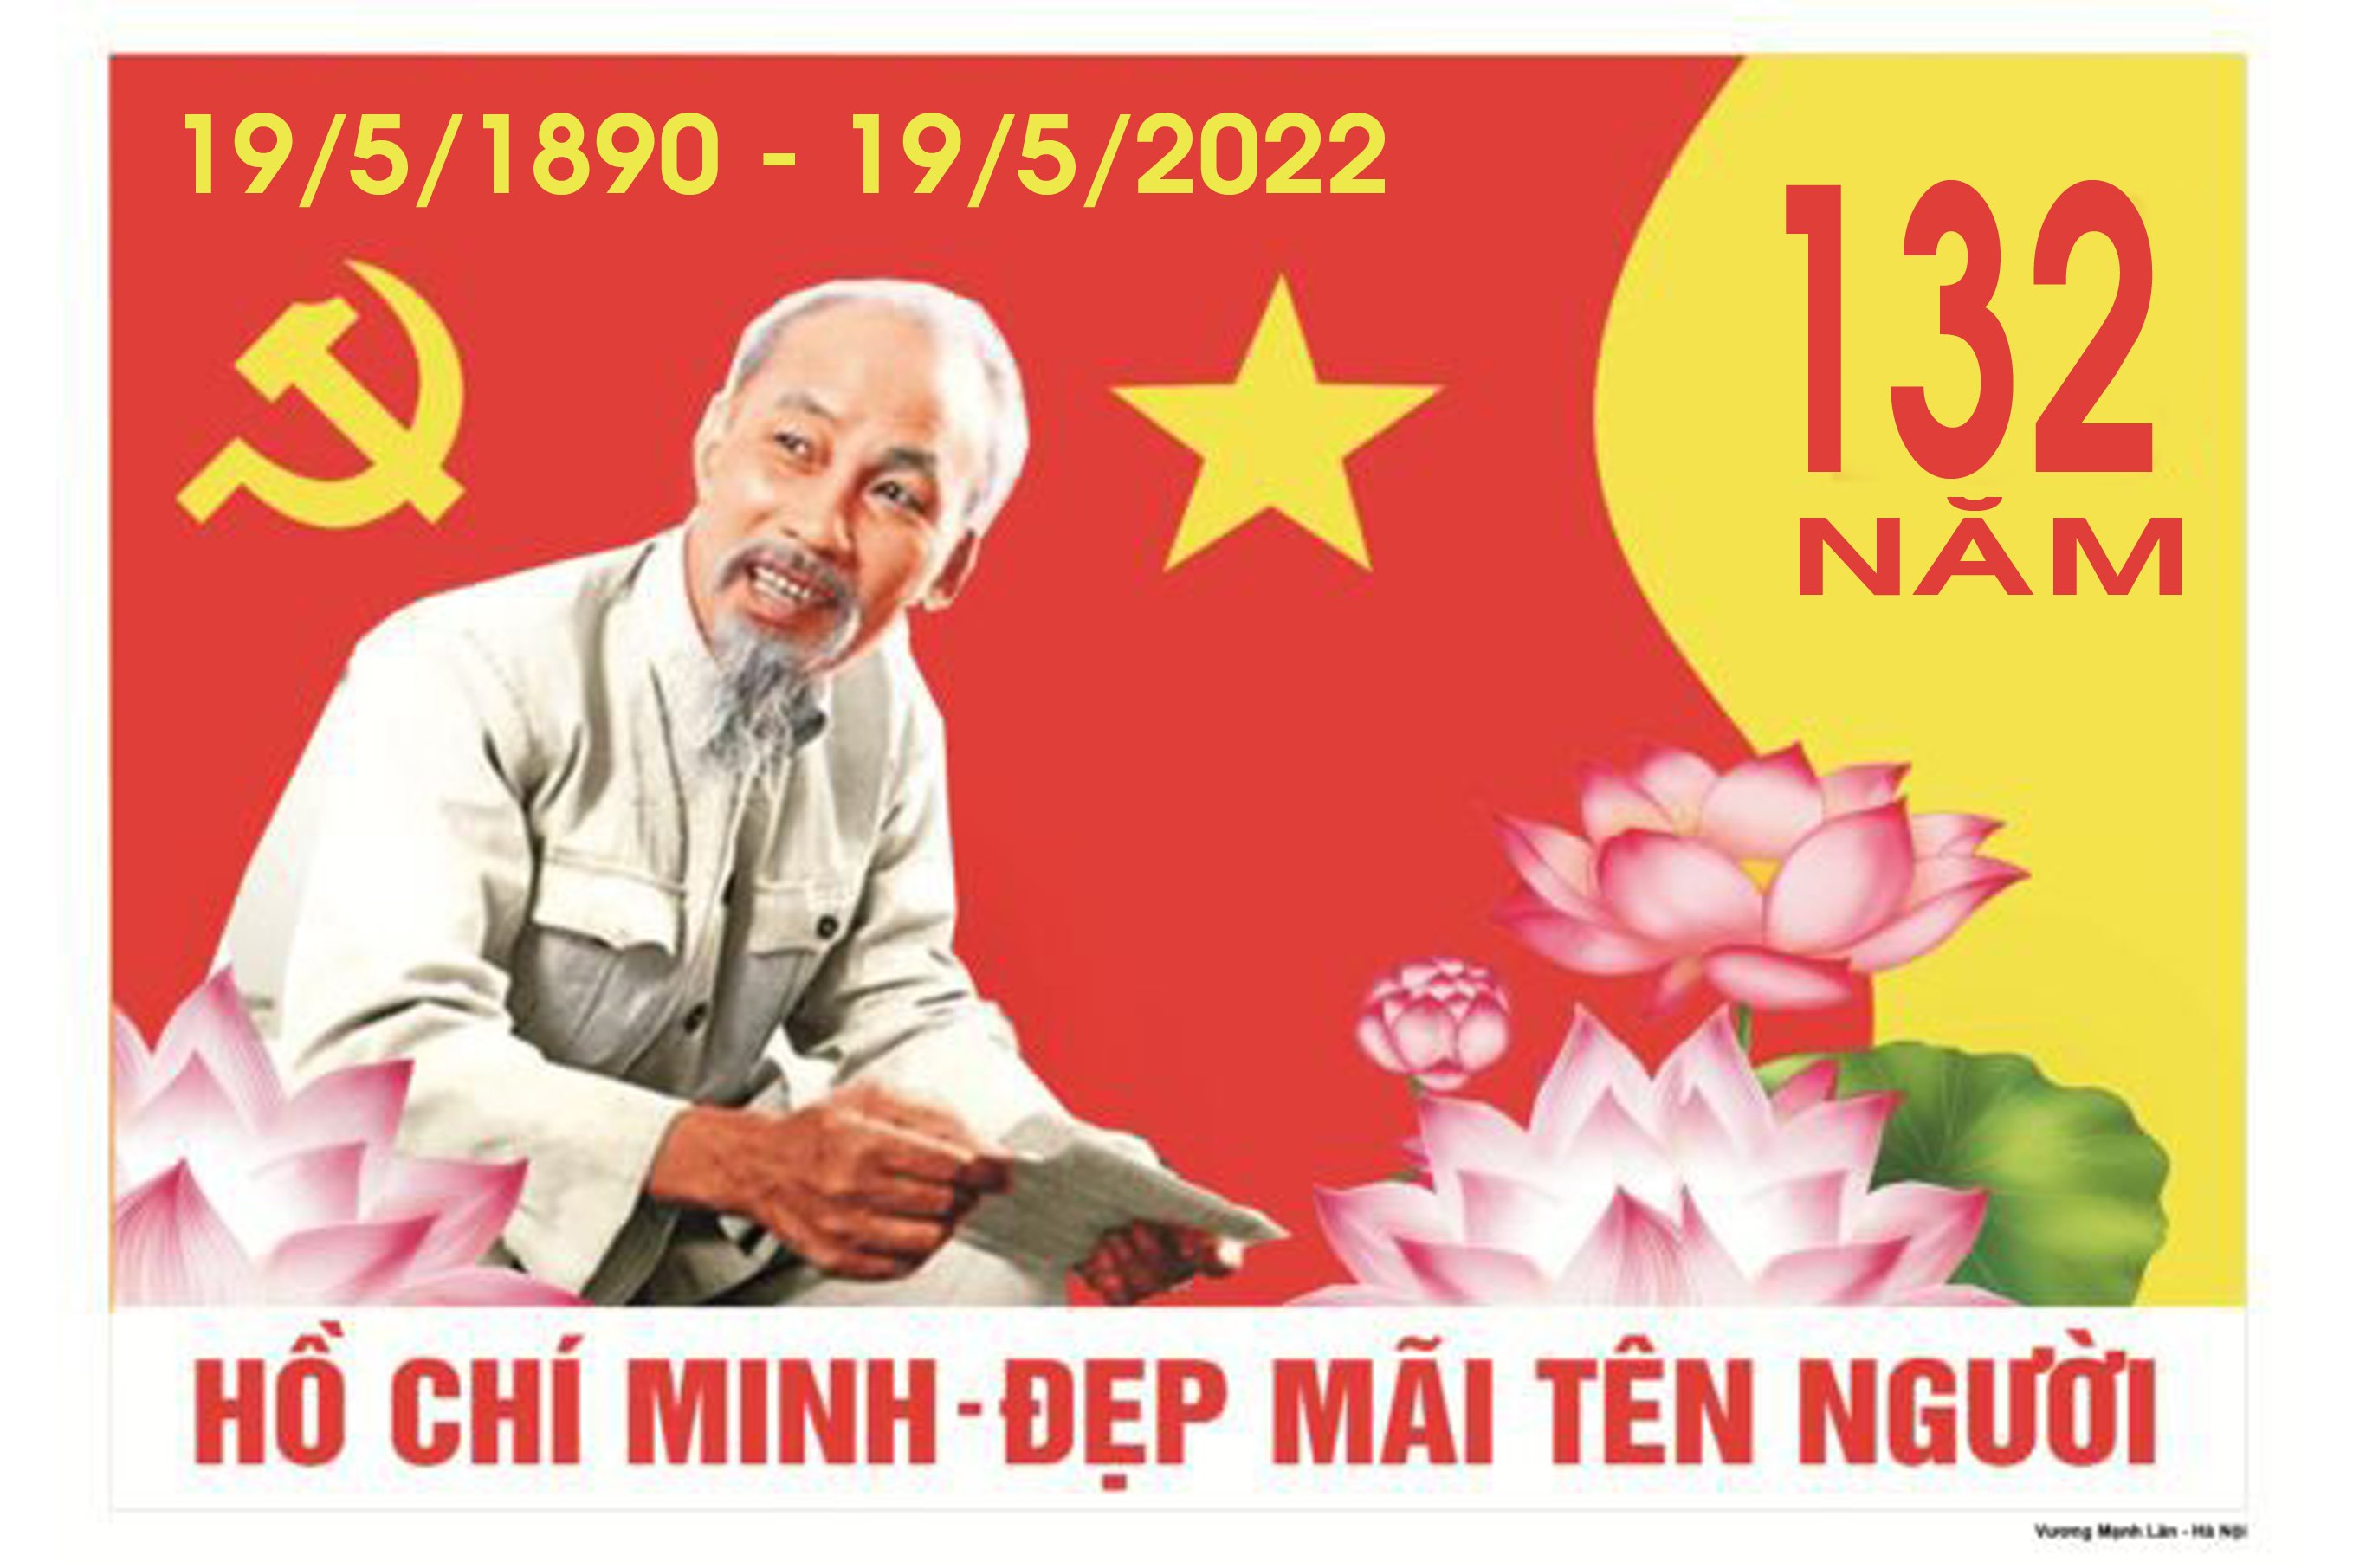  Cuộc đời và sự nghiệp Chủ tịch Hồ Chí Minh là một bản anh hùng ca